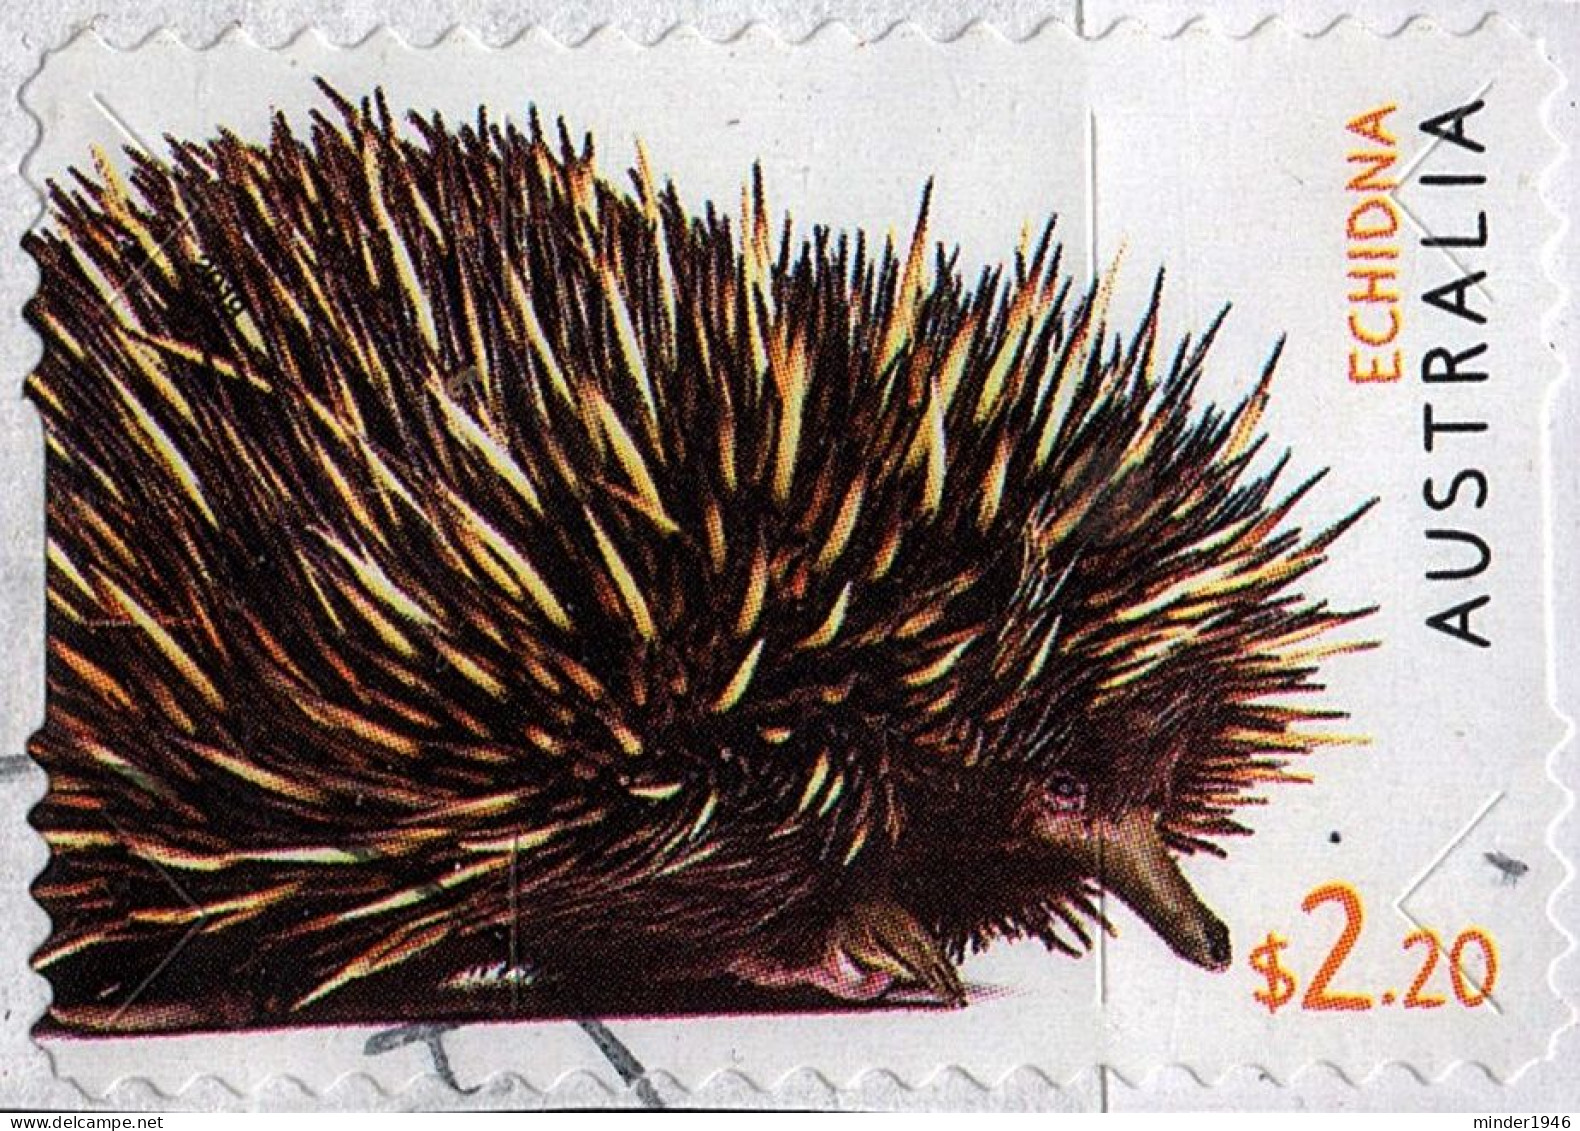 AUSTRALIA 2019 $2.20 Multicoloured, Australian Fauna-Echidna Self Adhesive Die Cut FU - Oblitérés